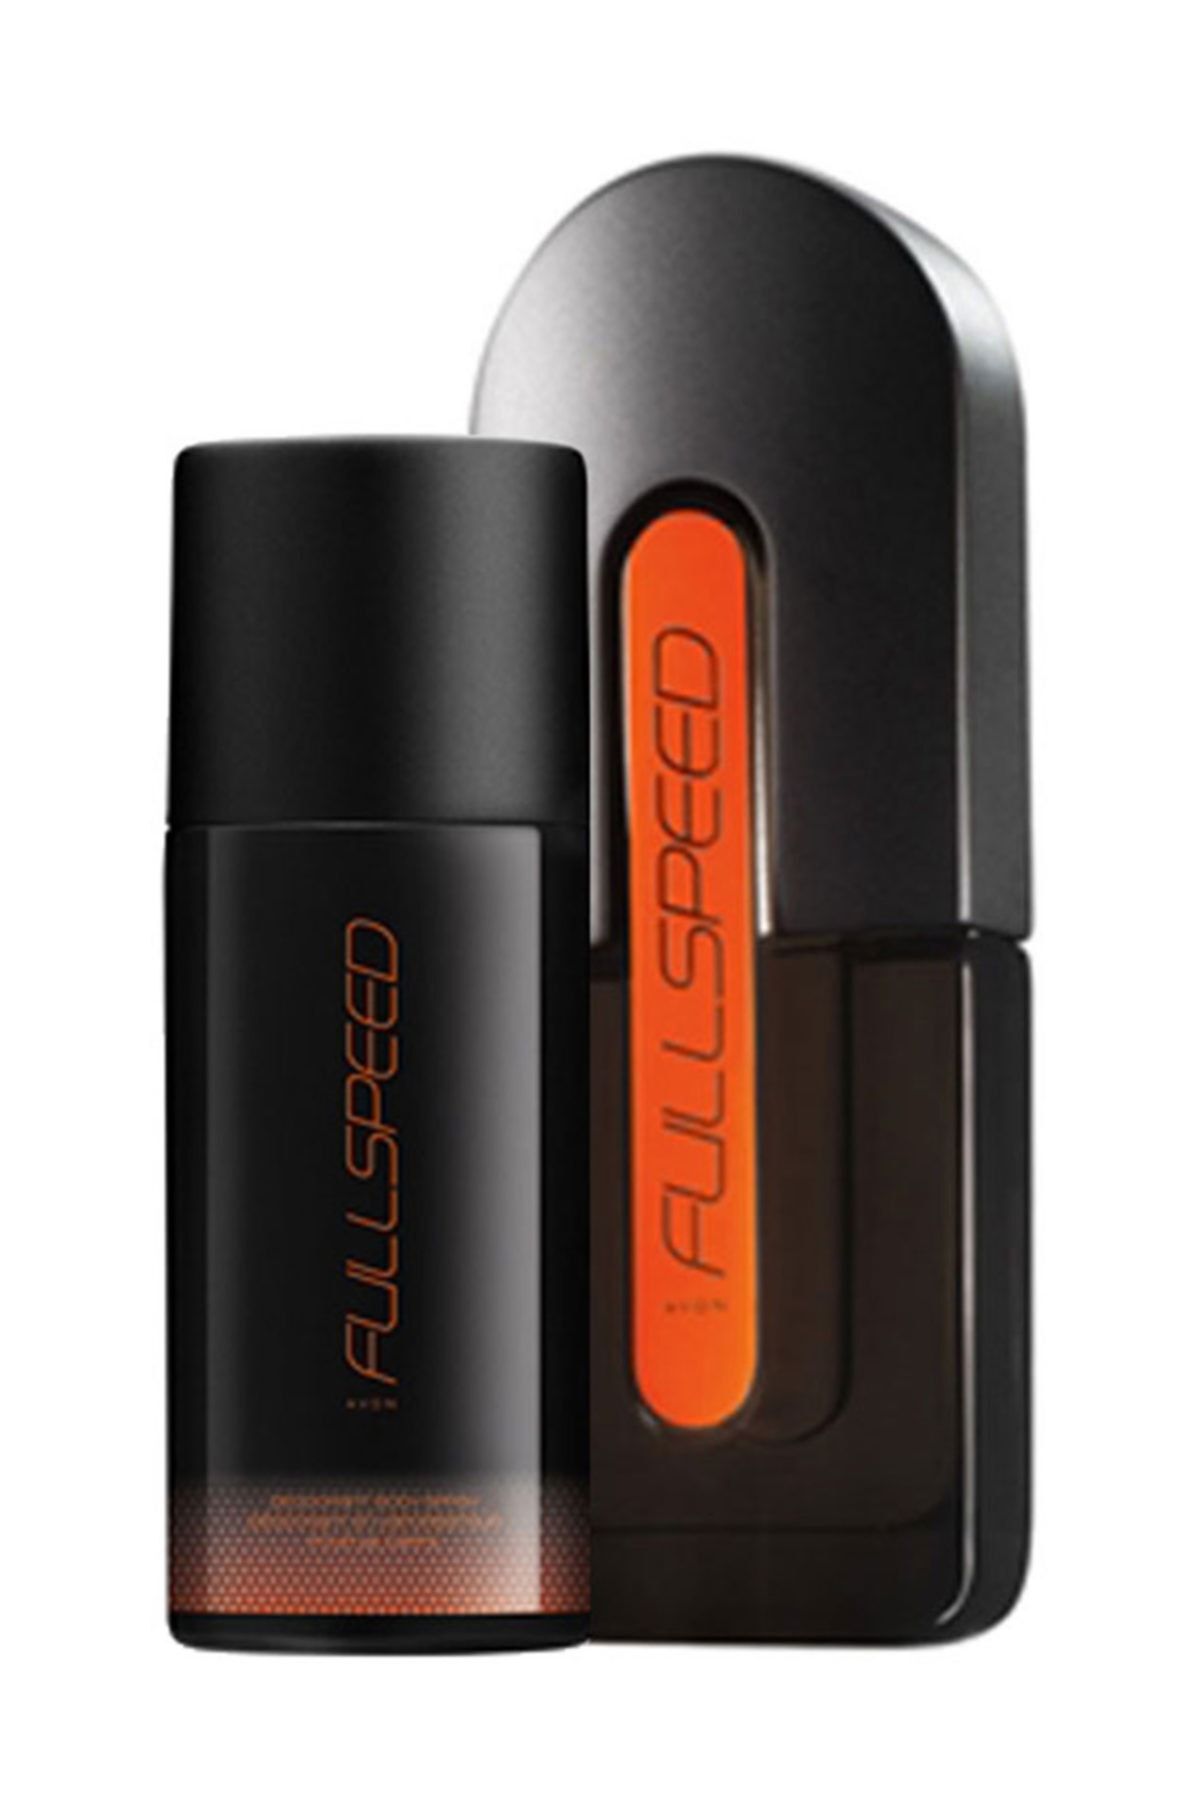 Avon Full Speed Erkek Parfüm Edt 75 Ml. ve Full Speed Erkek Deodorant 150 Ml. İkili Paket